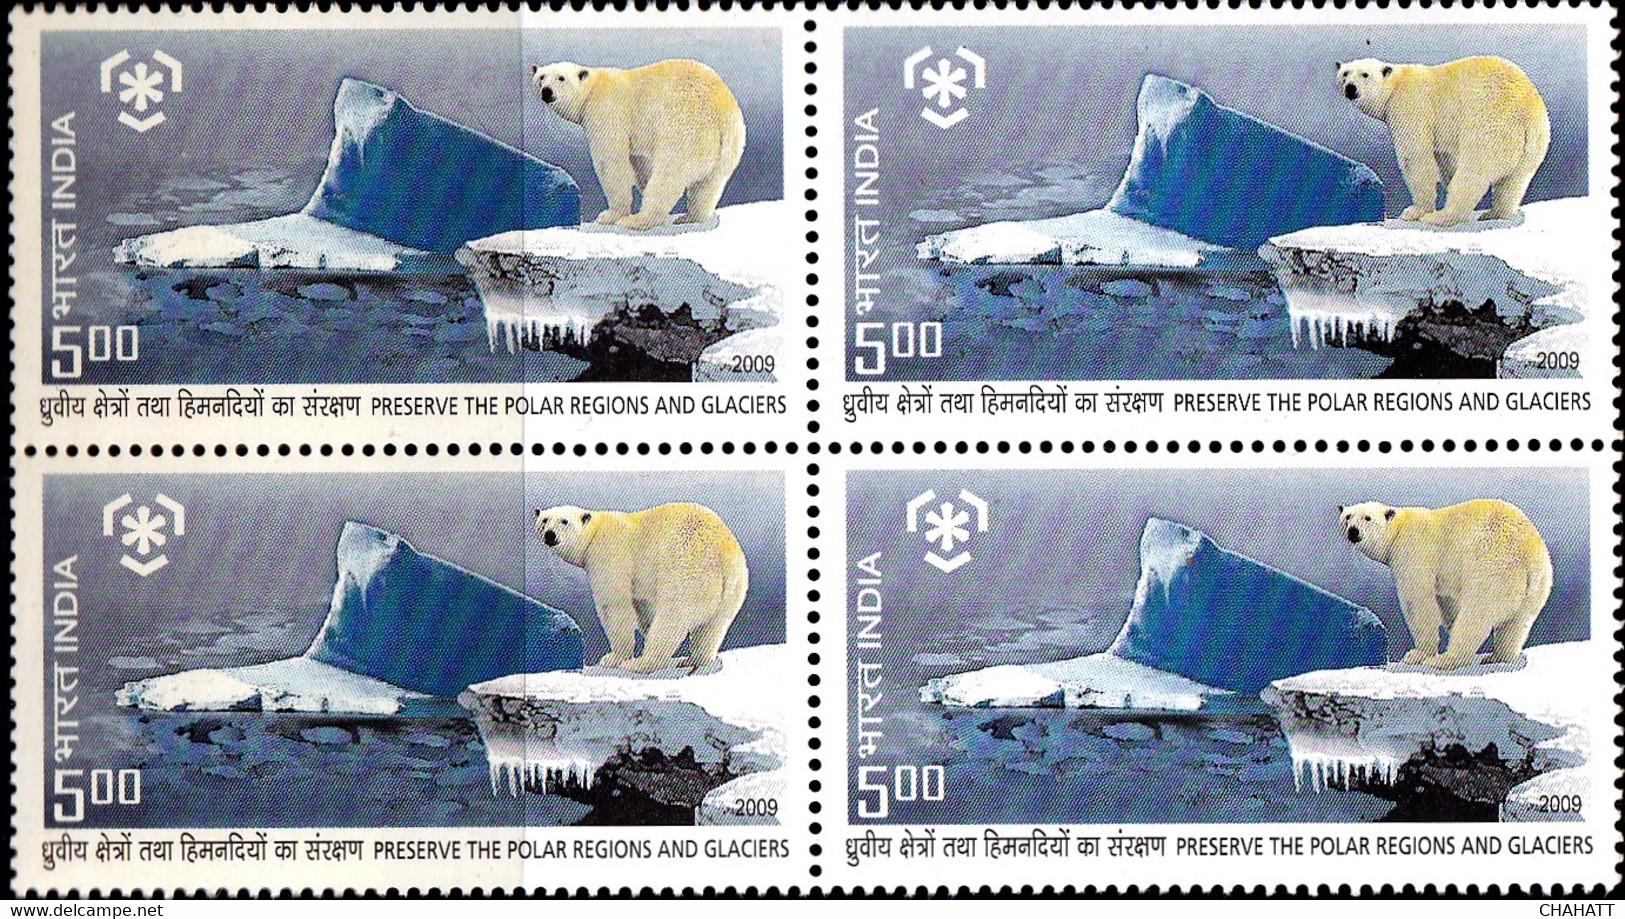 POLAR BEARS - PRESERVE THE POLAR REGIONS AND GLACIER- BLOCK OF 4 WITH CORNER PAIR-VARIETY-INDIA 2009-MNH-D5-41 - Preservar Las Regiones Polares Y Glaciares